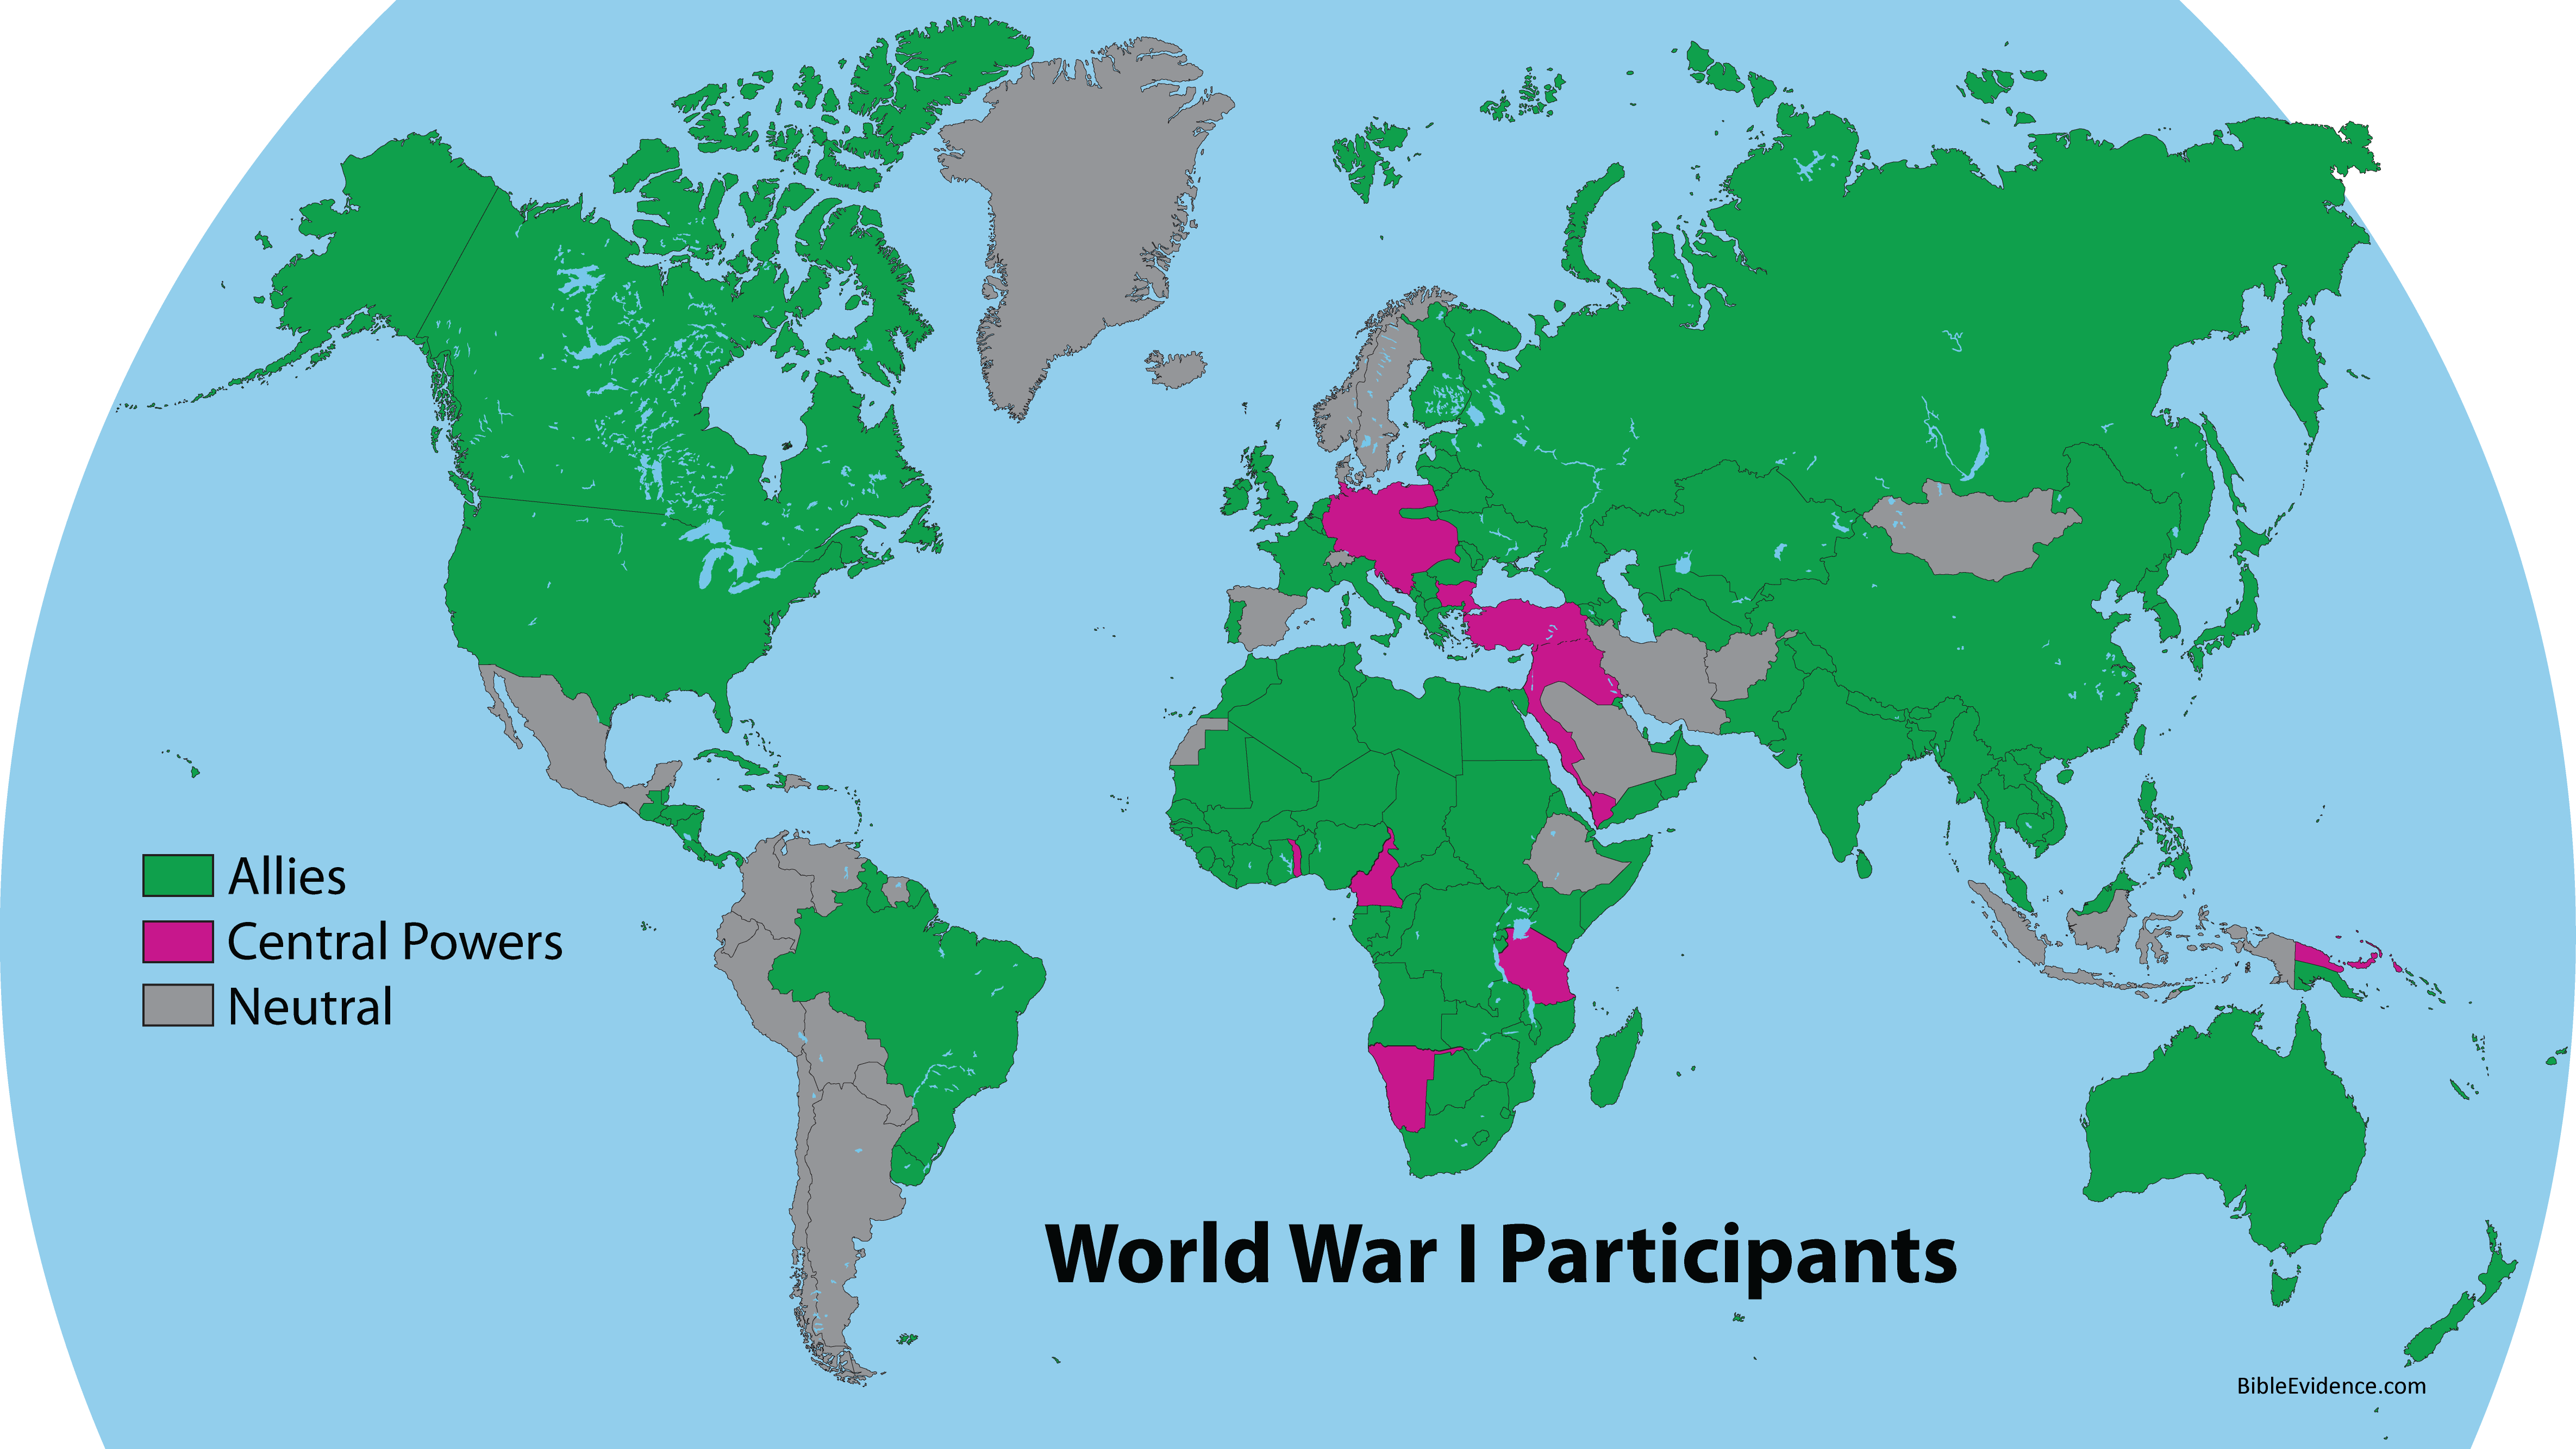 World War I Participants